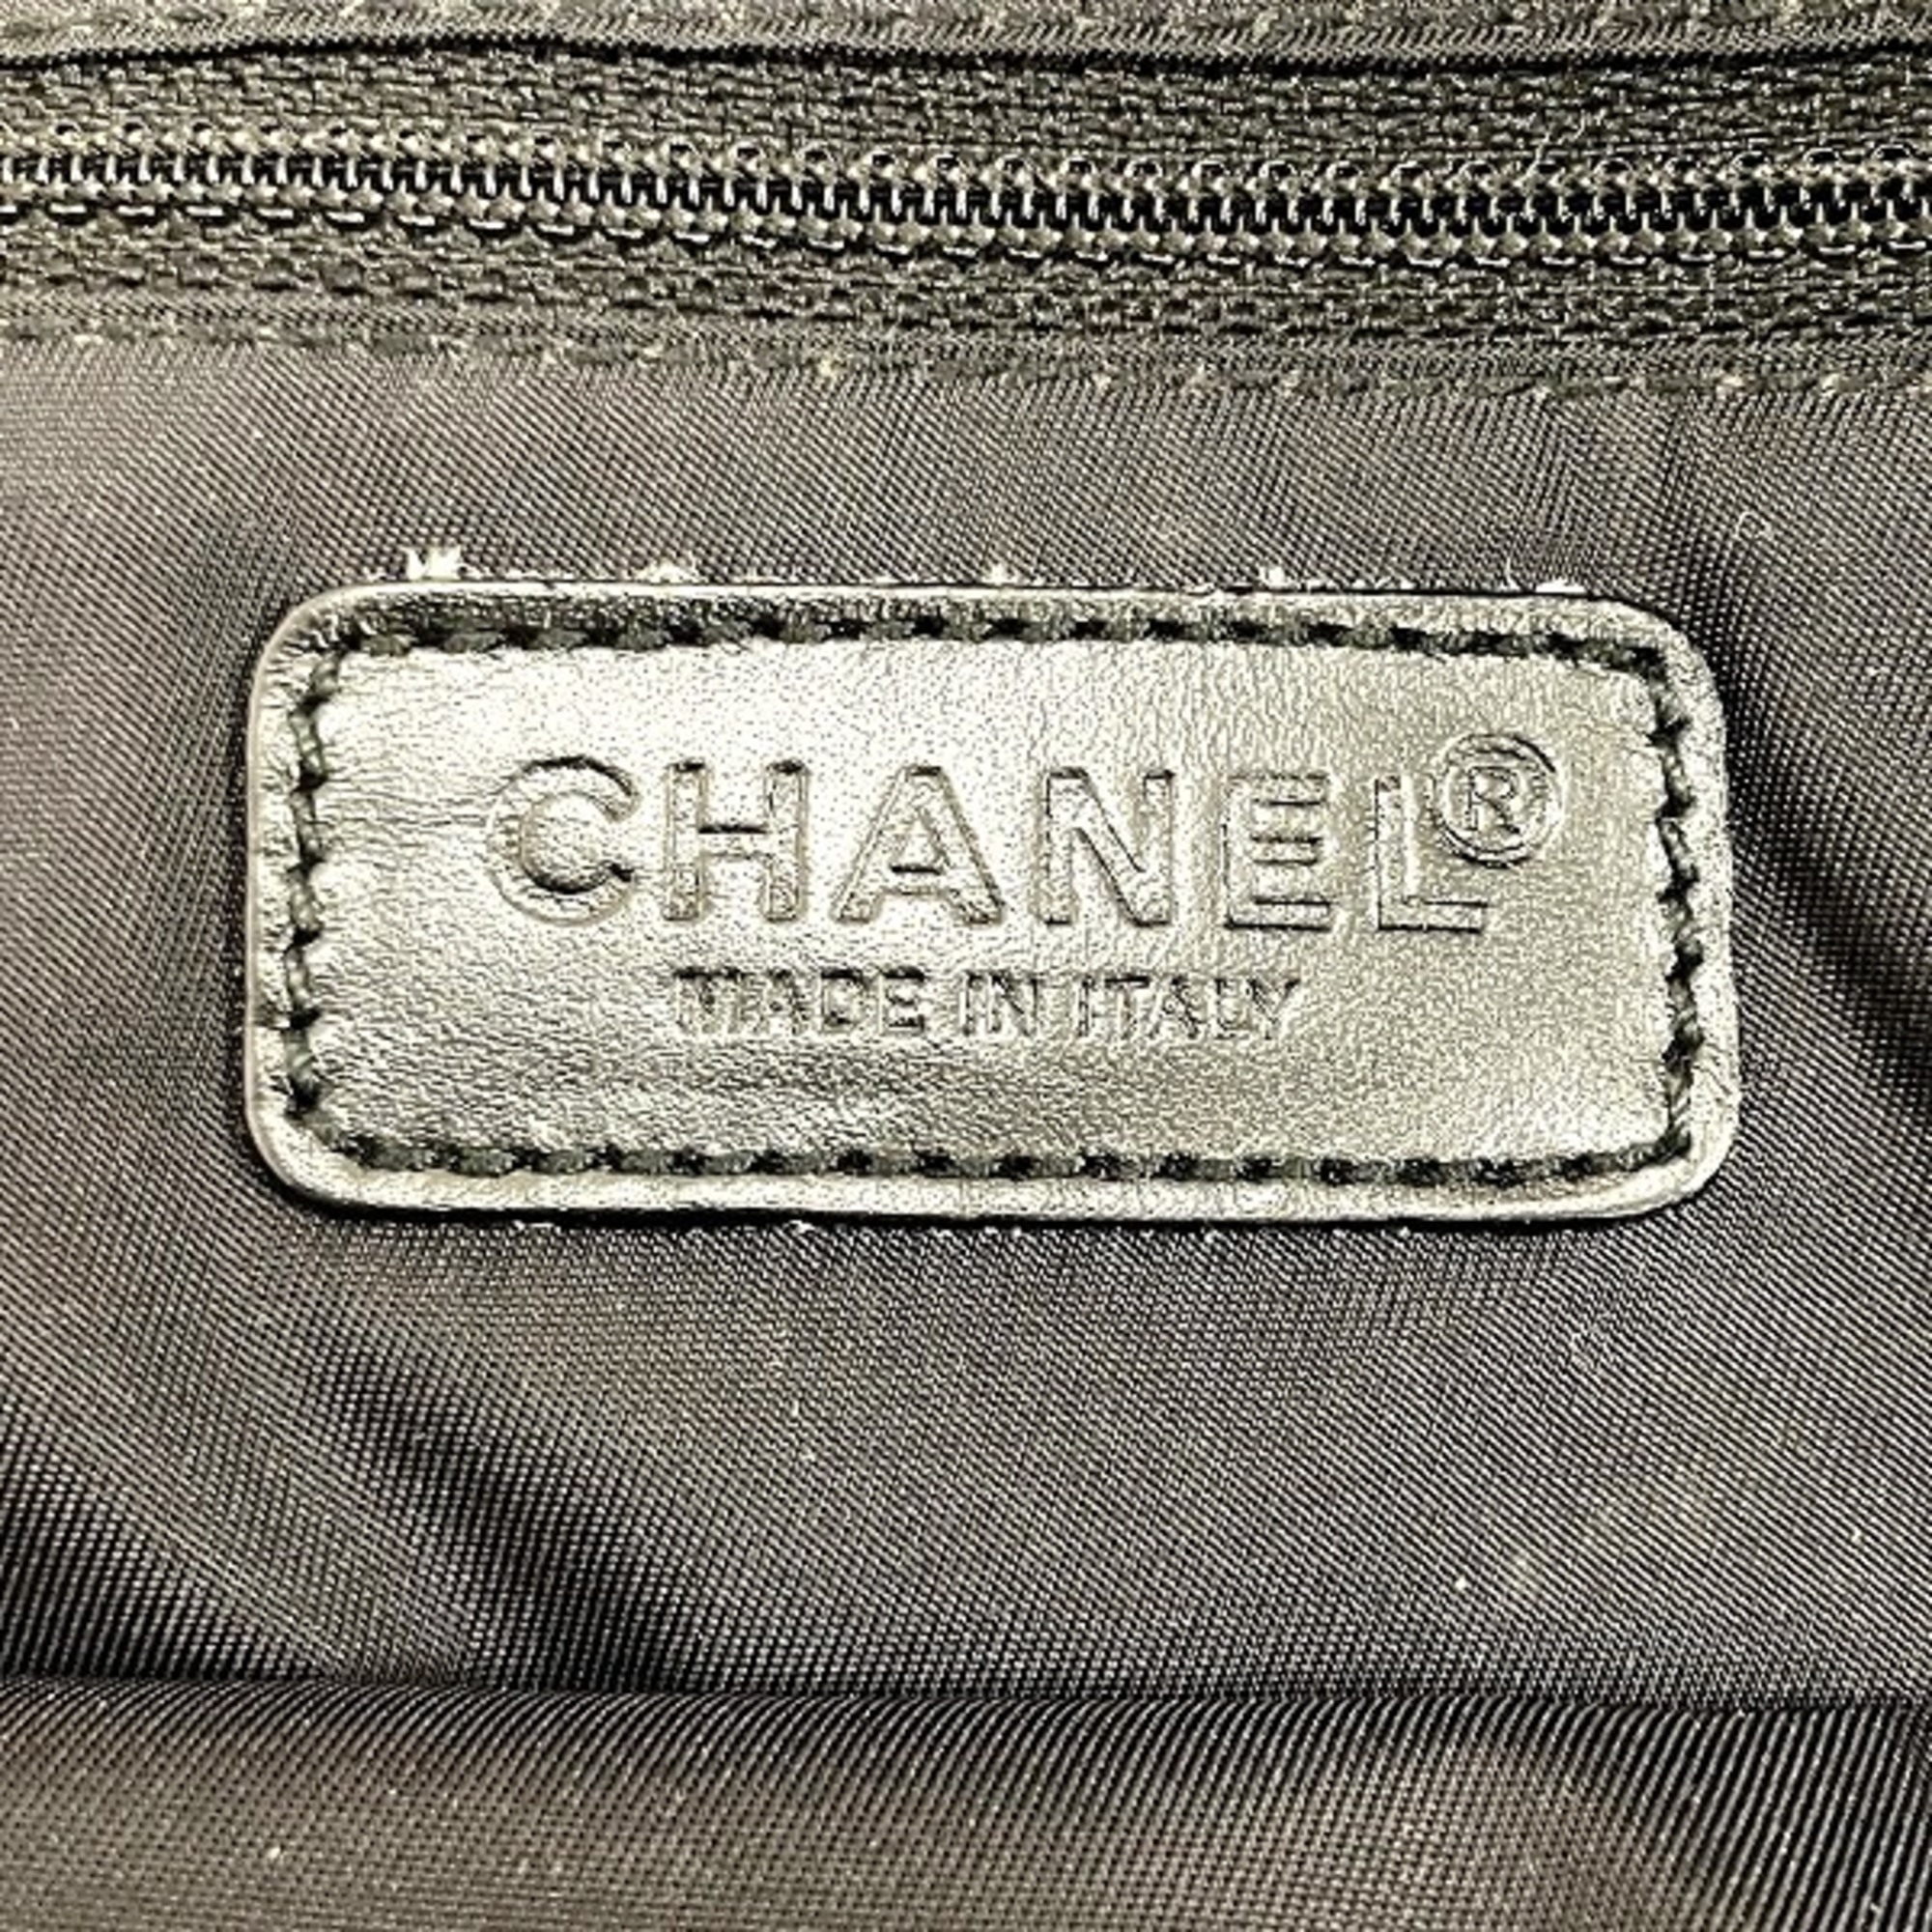 CHANEL New Travel Line A15828 Bag Handbag Ladies